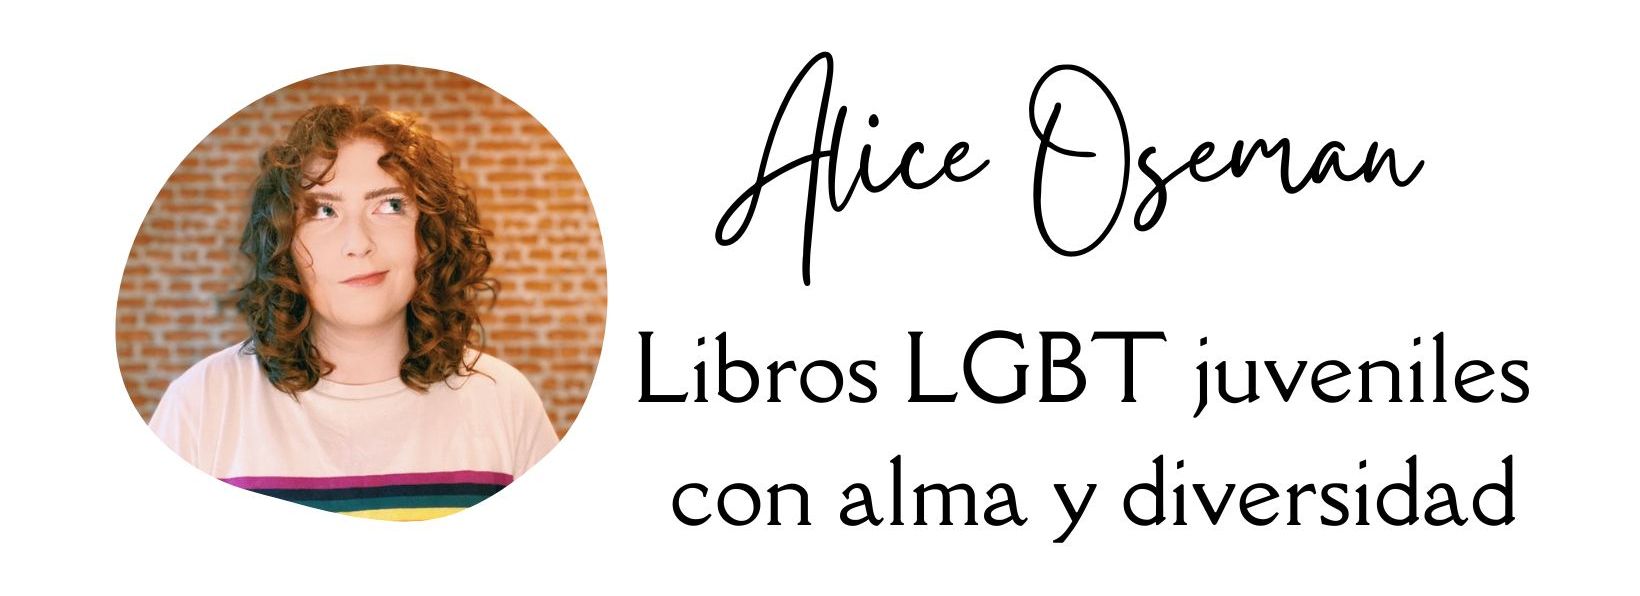 Alice Oseman, libros juveniles LGBT con alma y diversidad